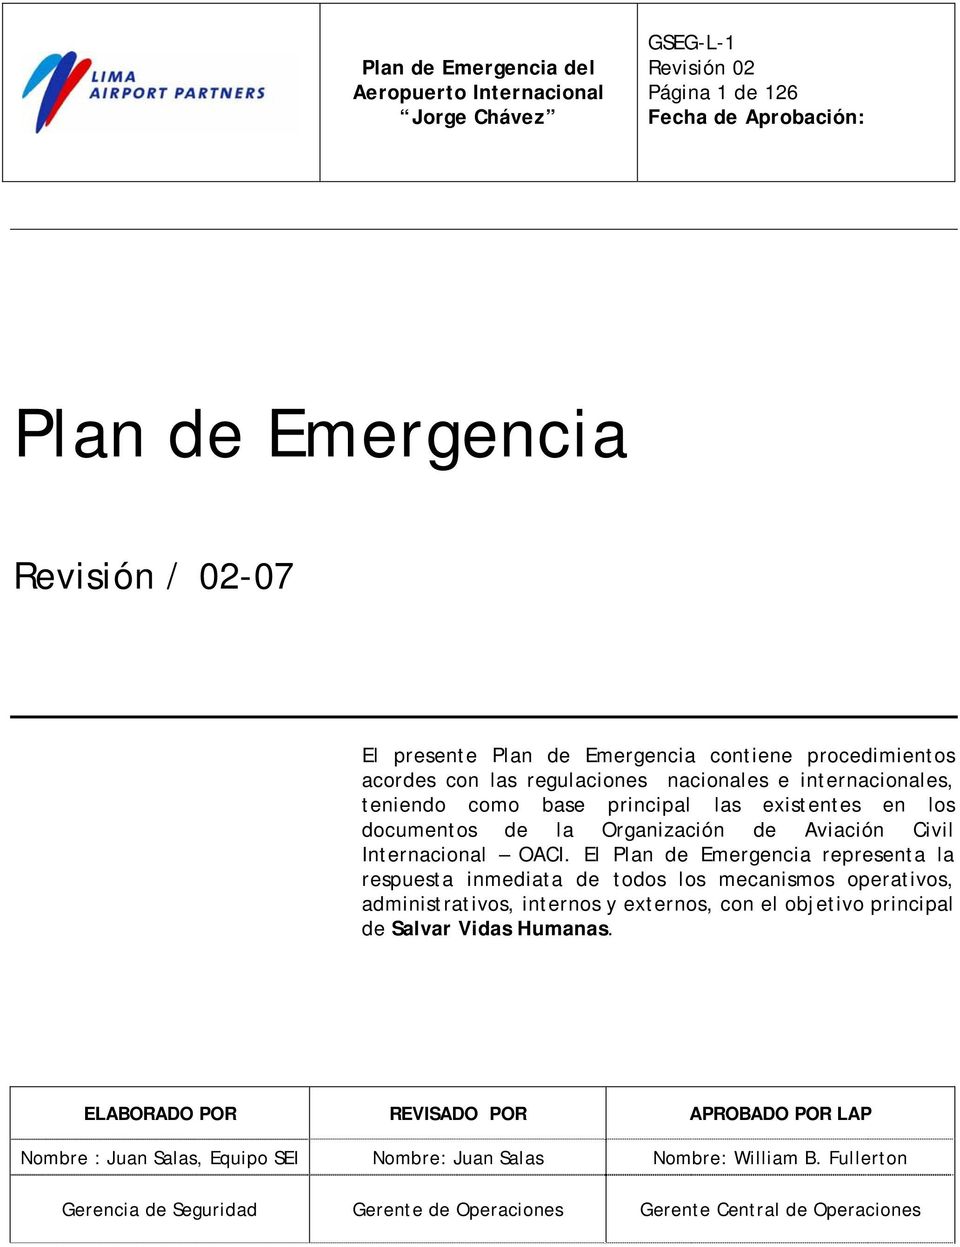 El Plan de Emergencia representa la respuesta inmediata de todos los mecanismos operativos, administrativos, internos y externos, con el objetivo principal de Salvar Vidas